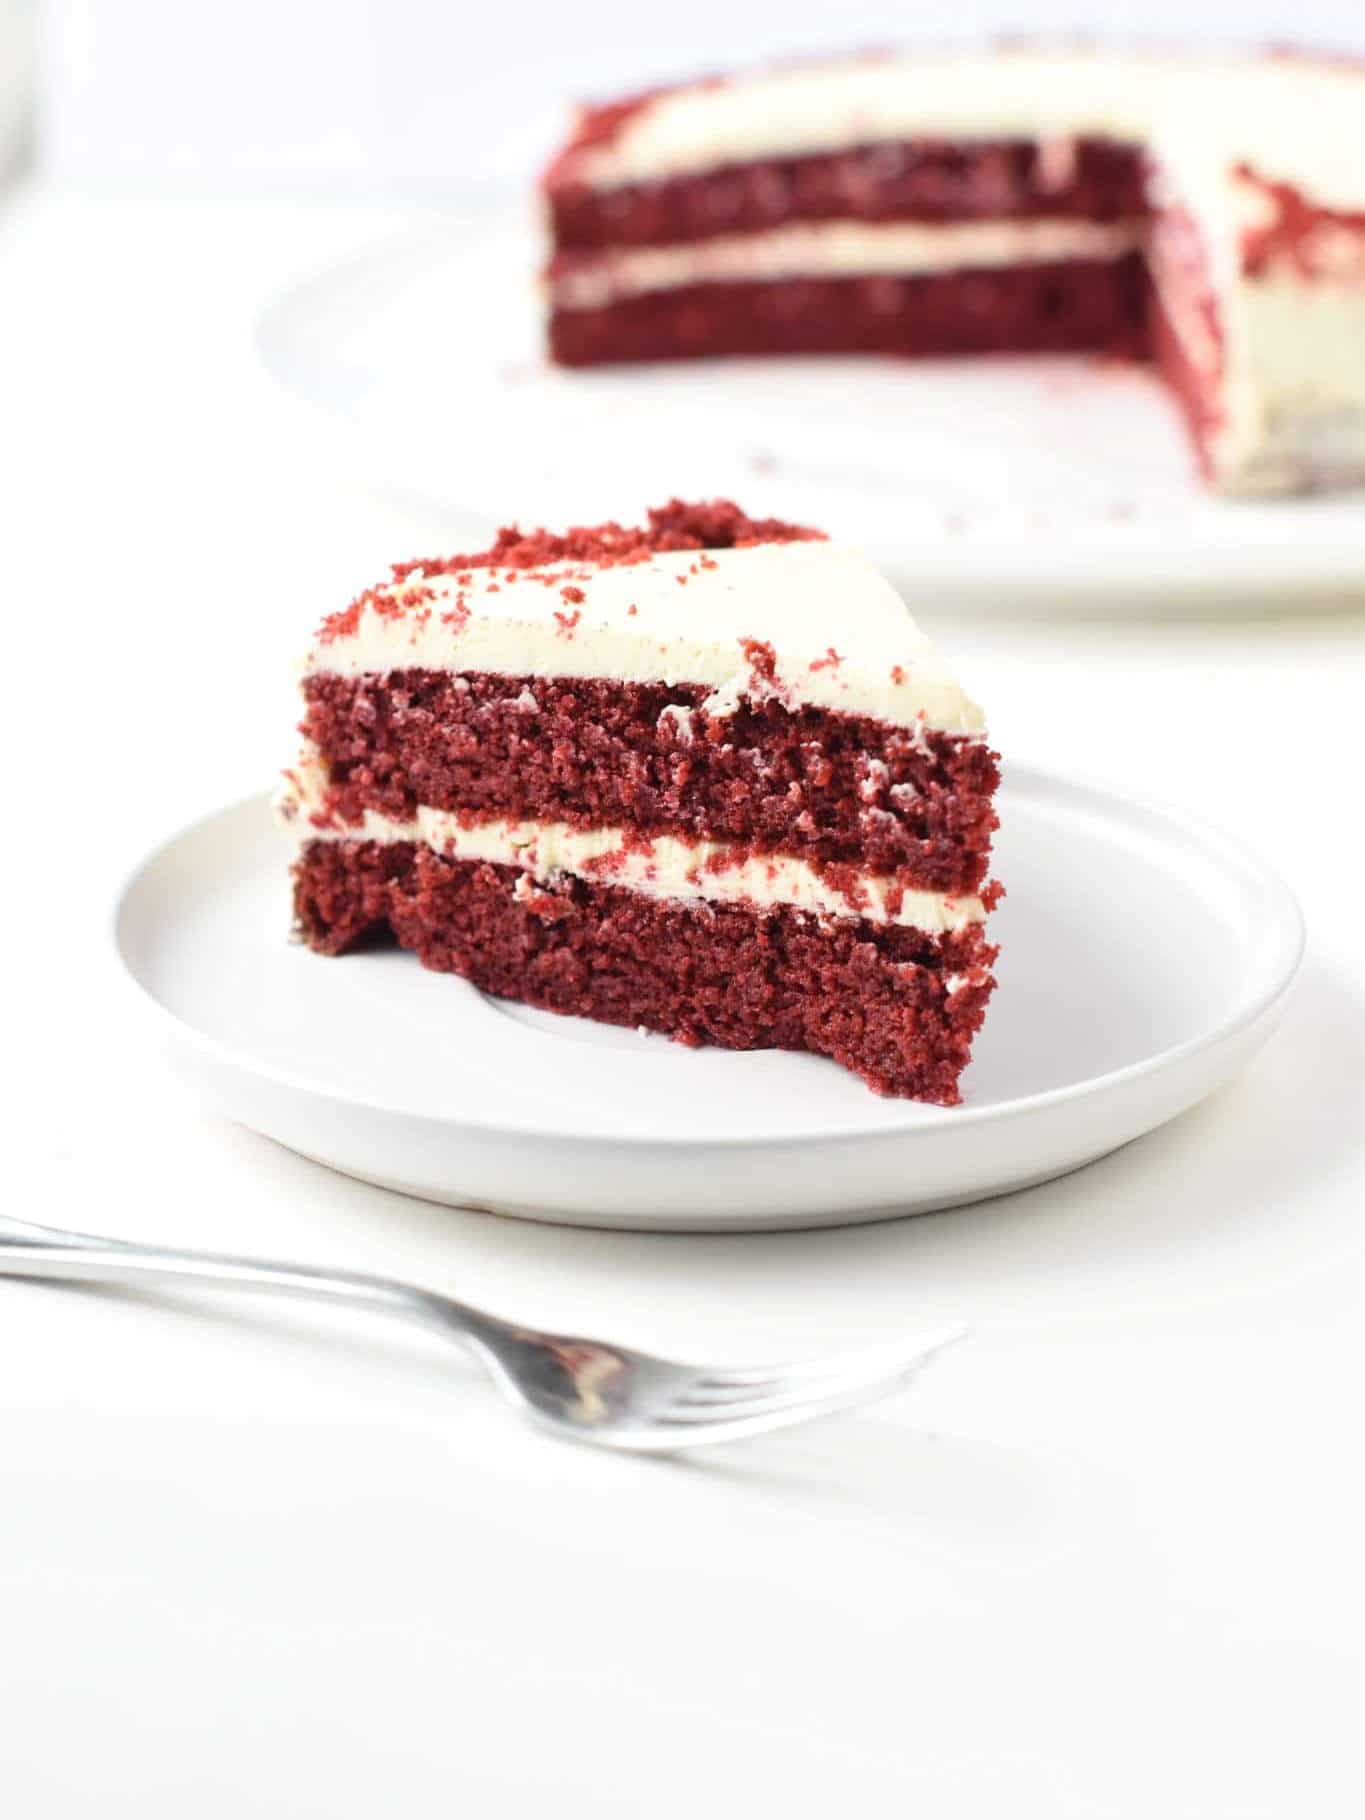 A slice of Keto Red Velvet Cake on a white plate.